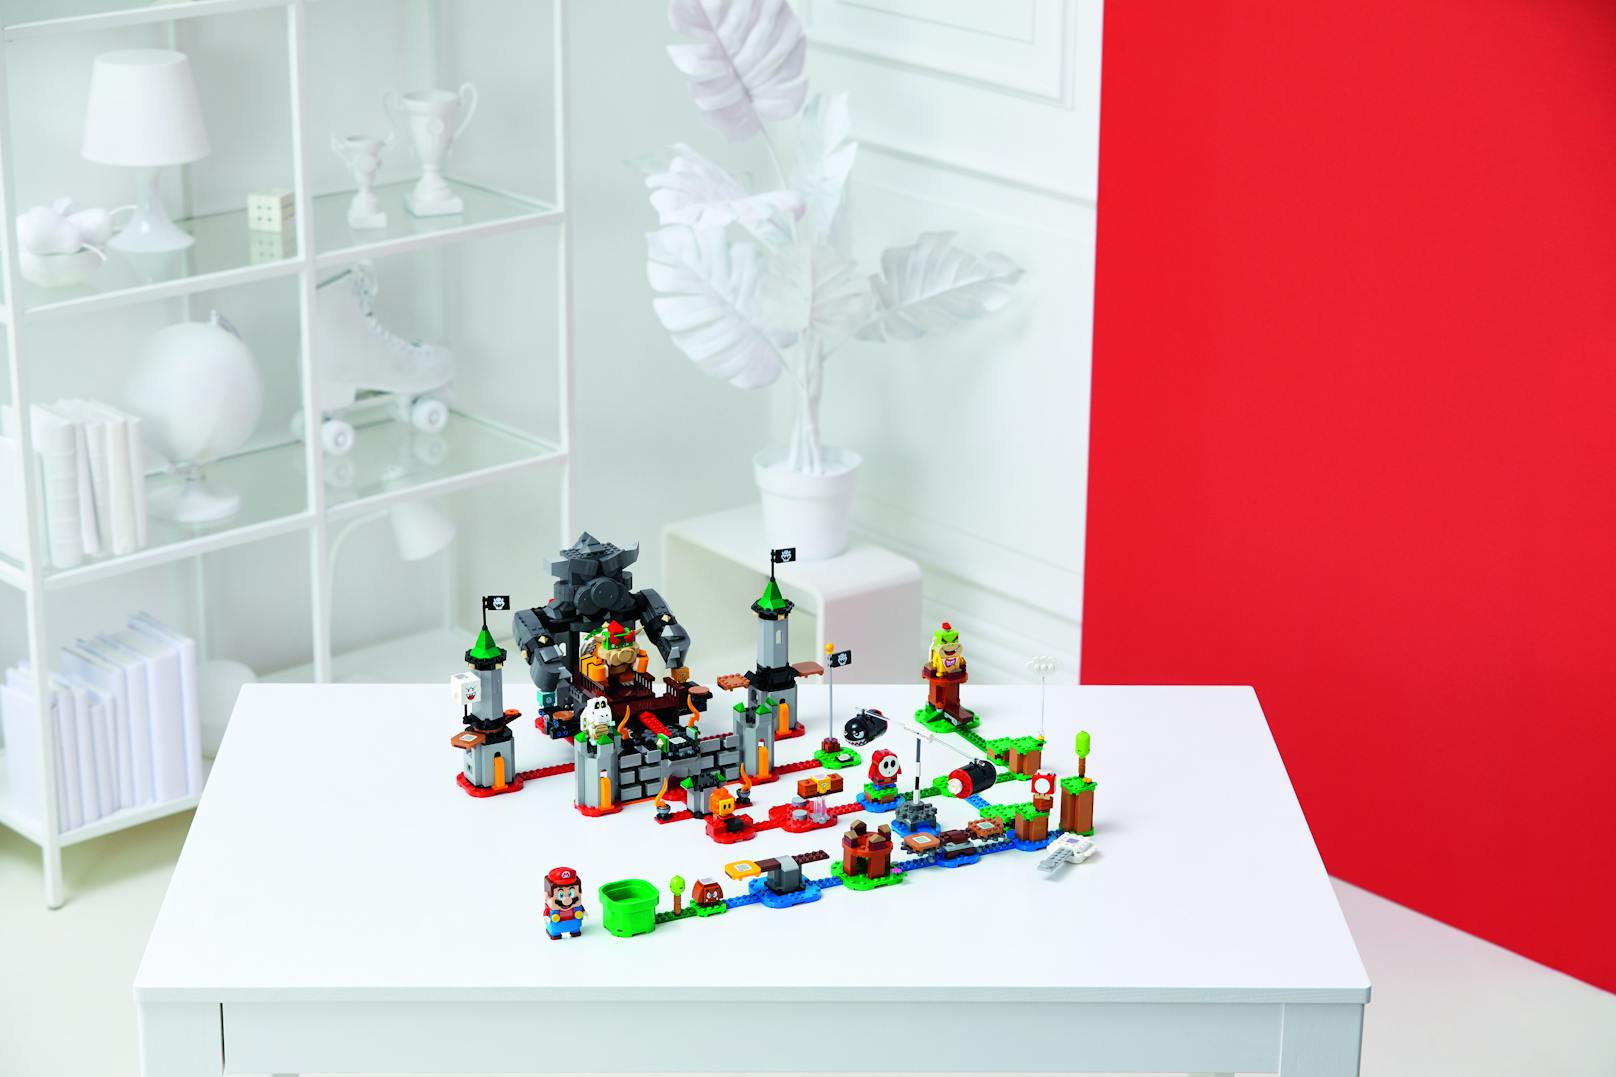 Jedes Lego-Erweiterungsset enthält neue Spielherausforderungen, um die Abenteuer mit dem Lego-Super-Mario-Starter-Set noch facettenreicher und aufregender zu gestalten.